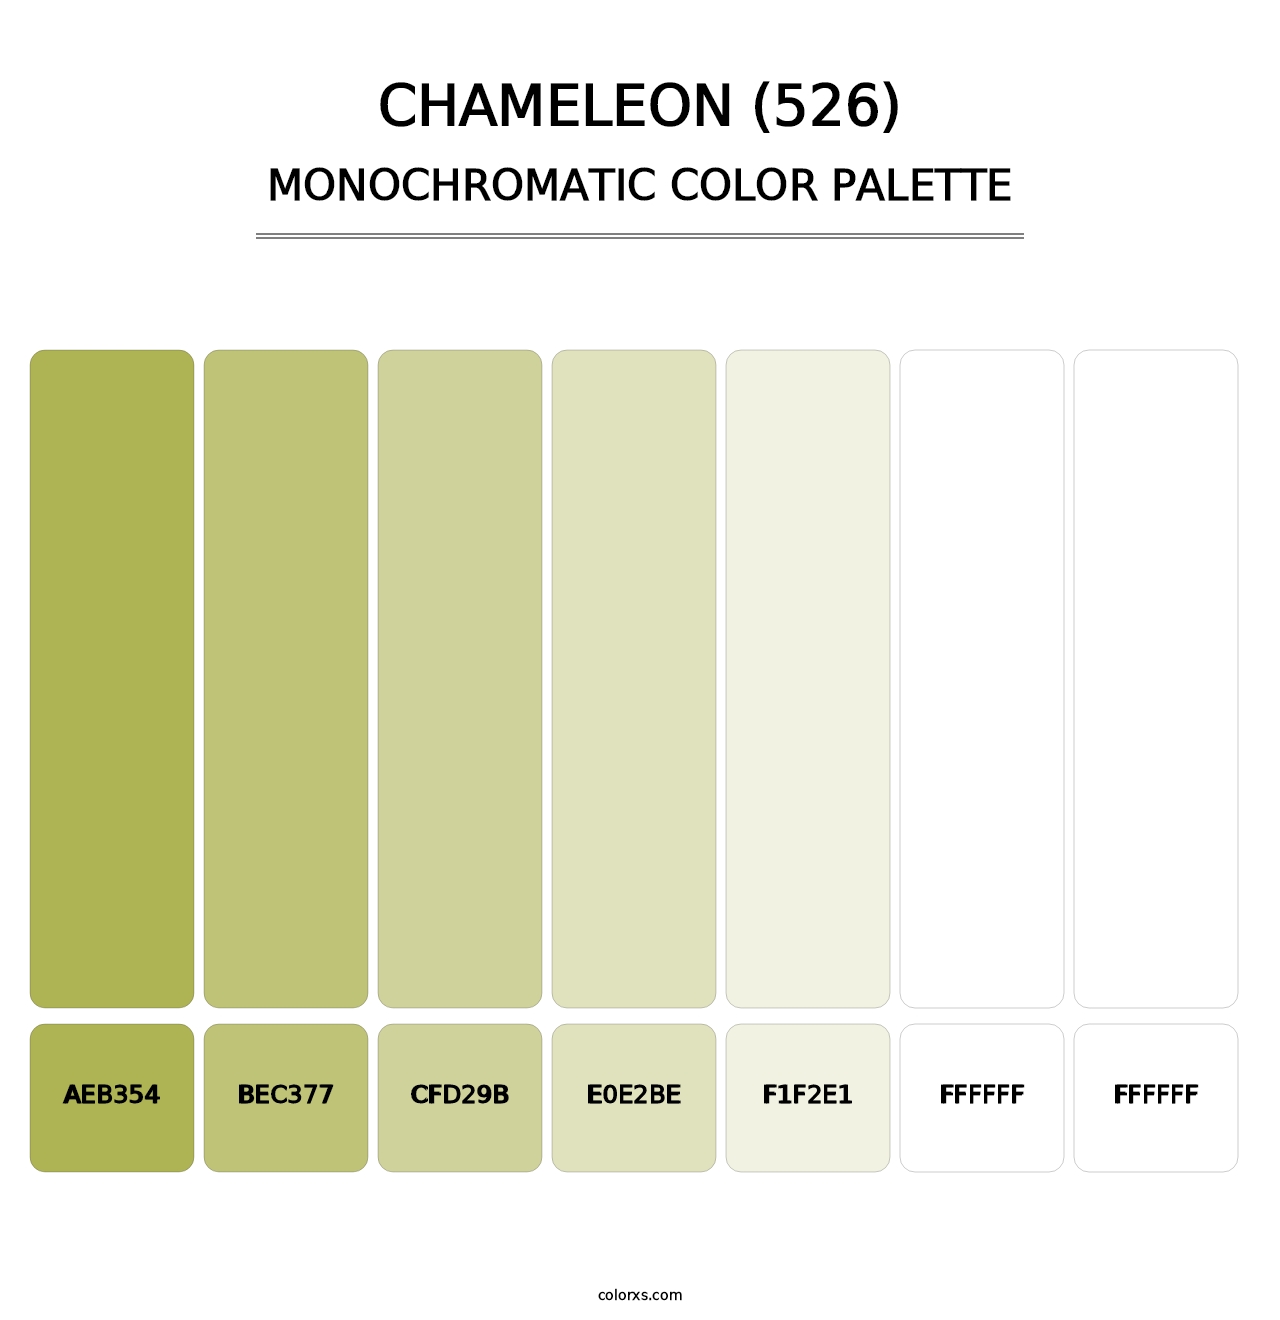 Chameleon (526) - Monochromatic Color Palette